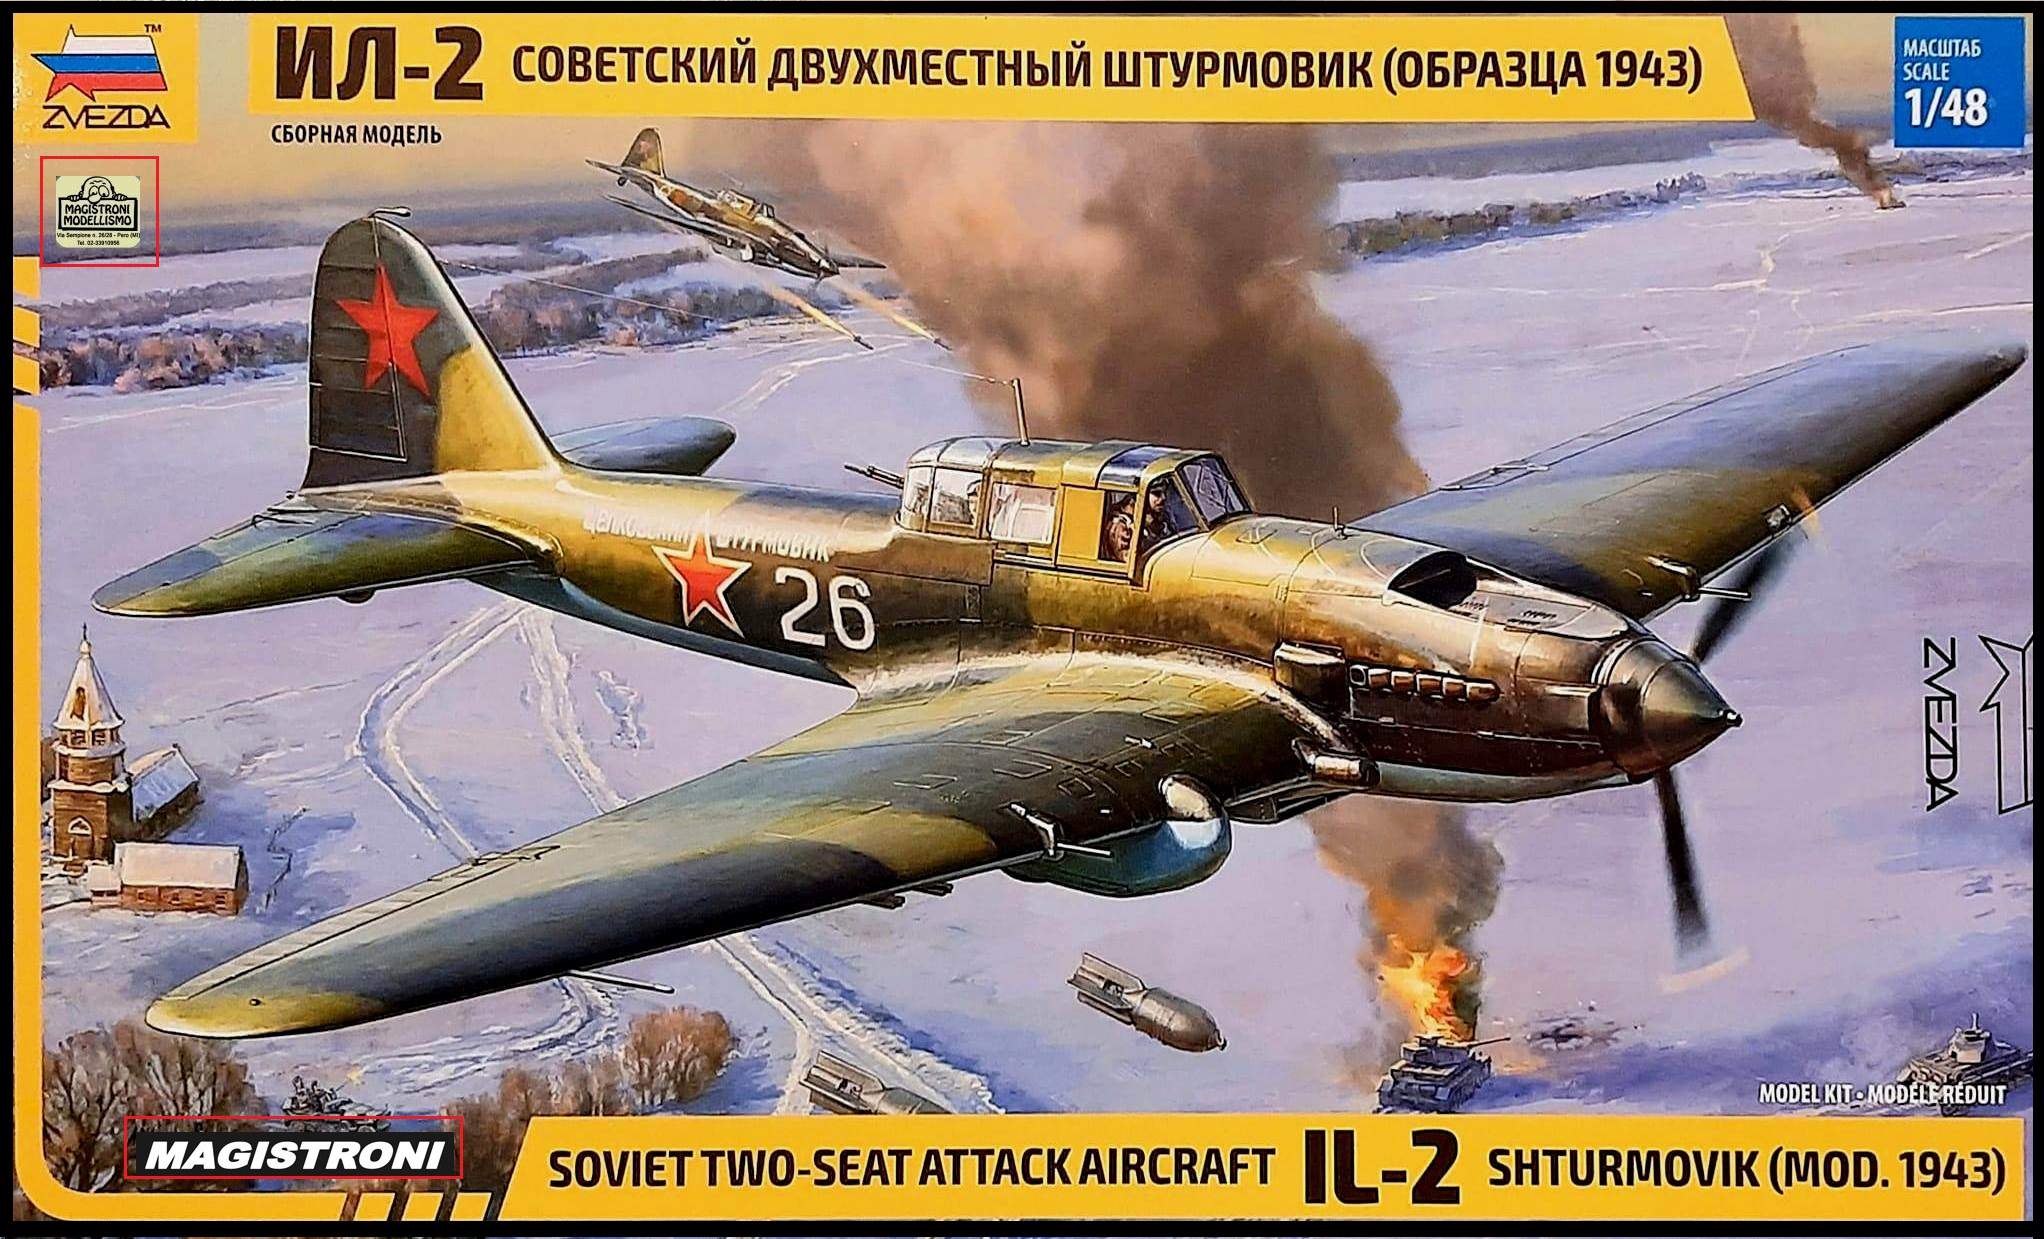 SOVIET-SEAT ATTAK AIRCRAFT IL-2 SHTURMOVIK  1943